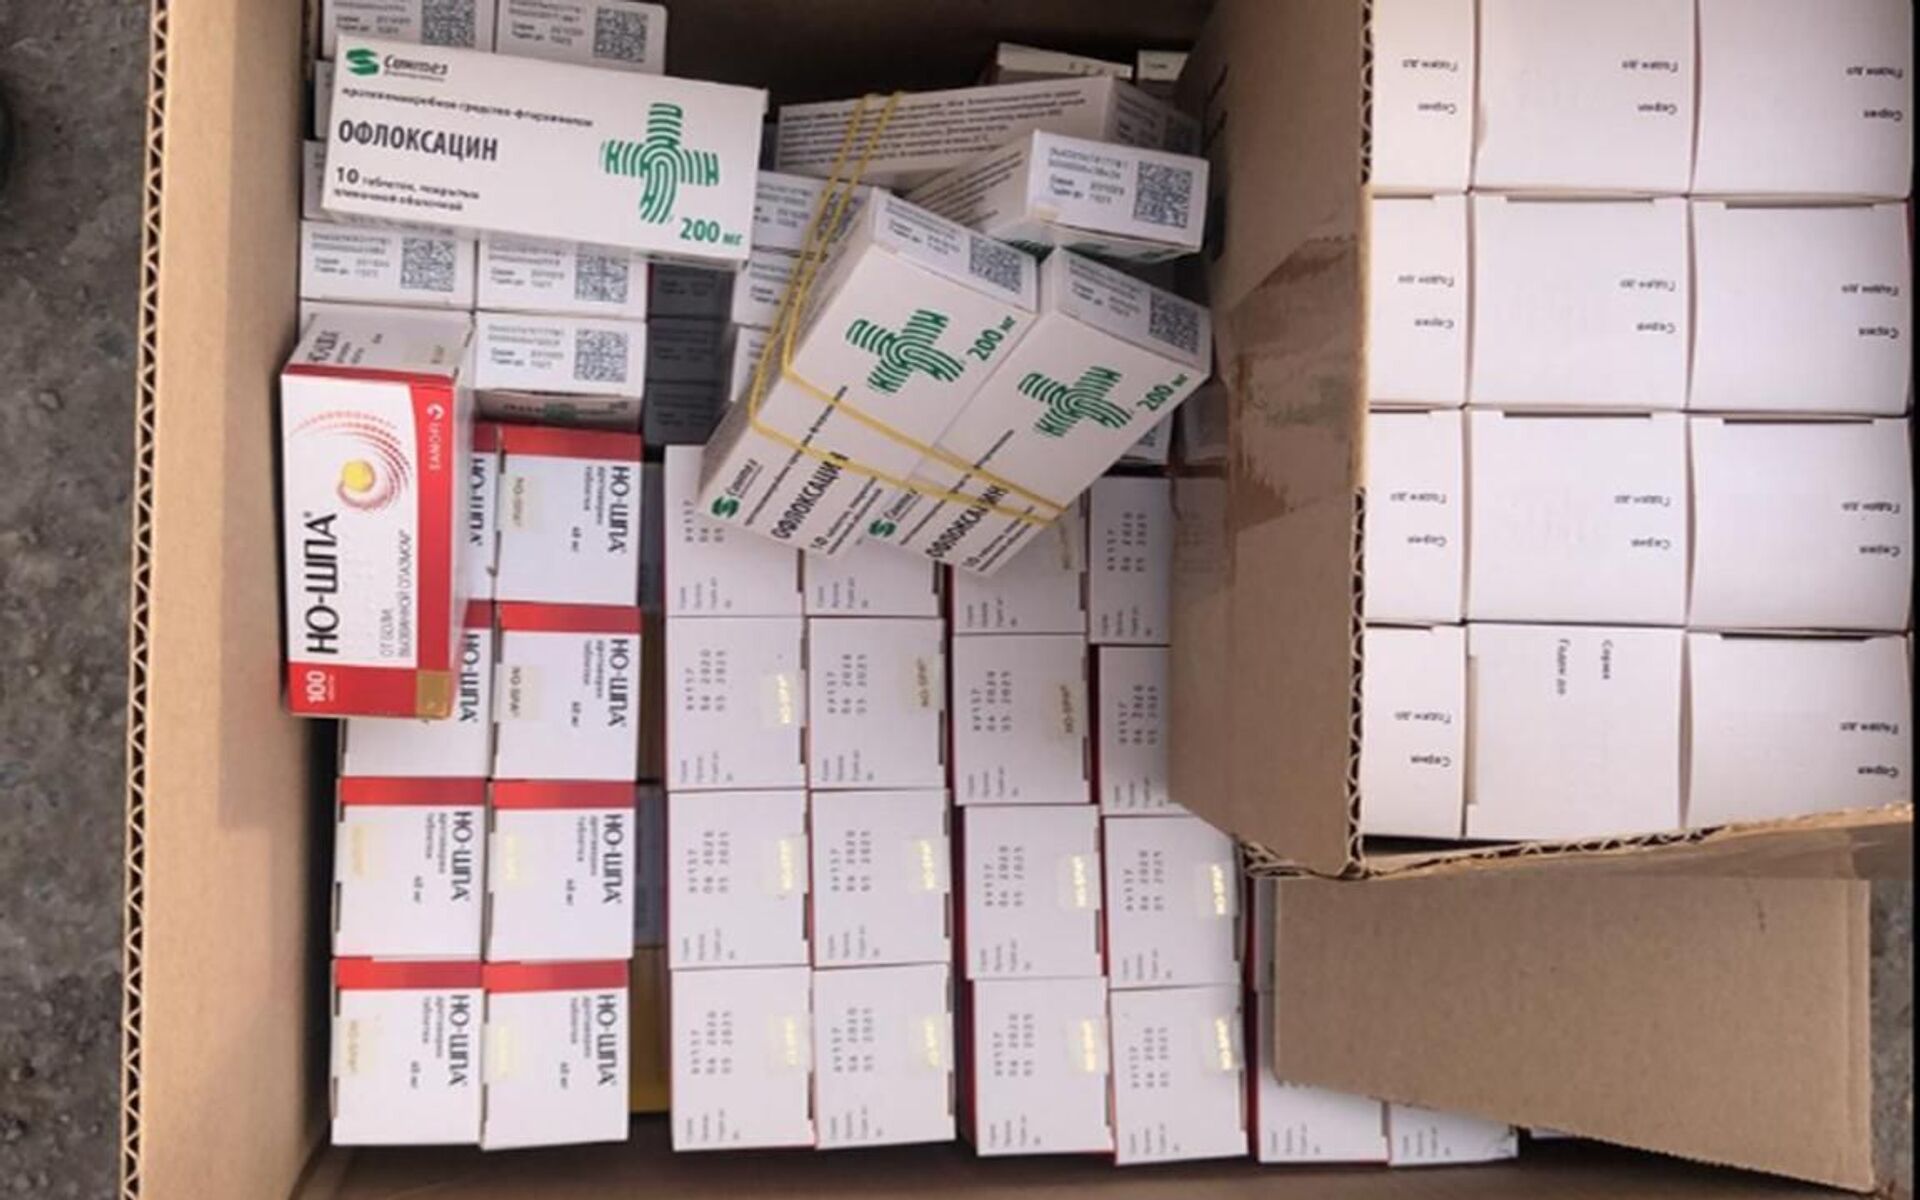 Контрабандные лекарства на $167 тысяч пытались вывезти из Казахстана в Кыргызстан - Sputnik Казахстан, 1920, 27.02.2021